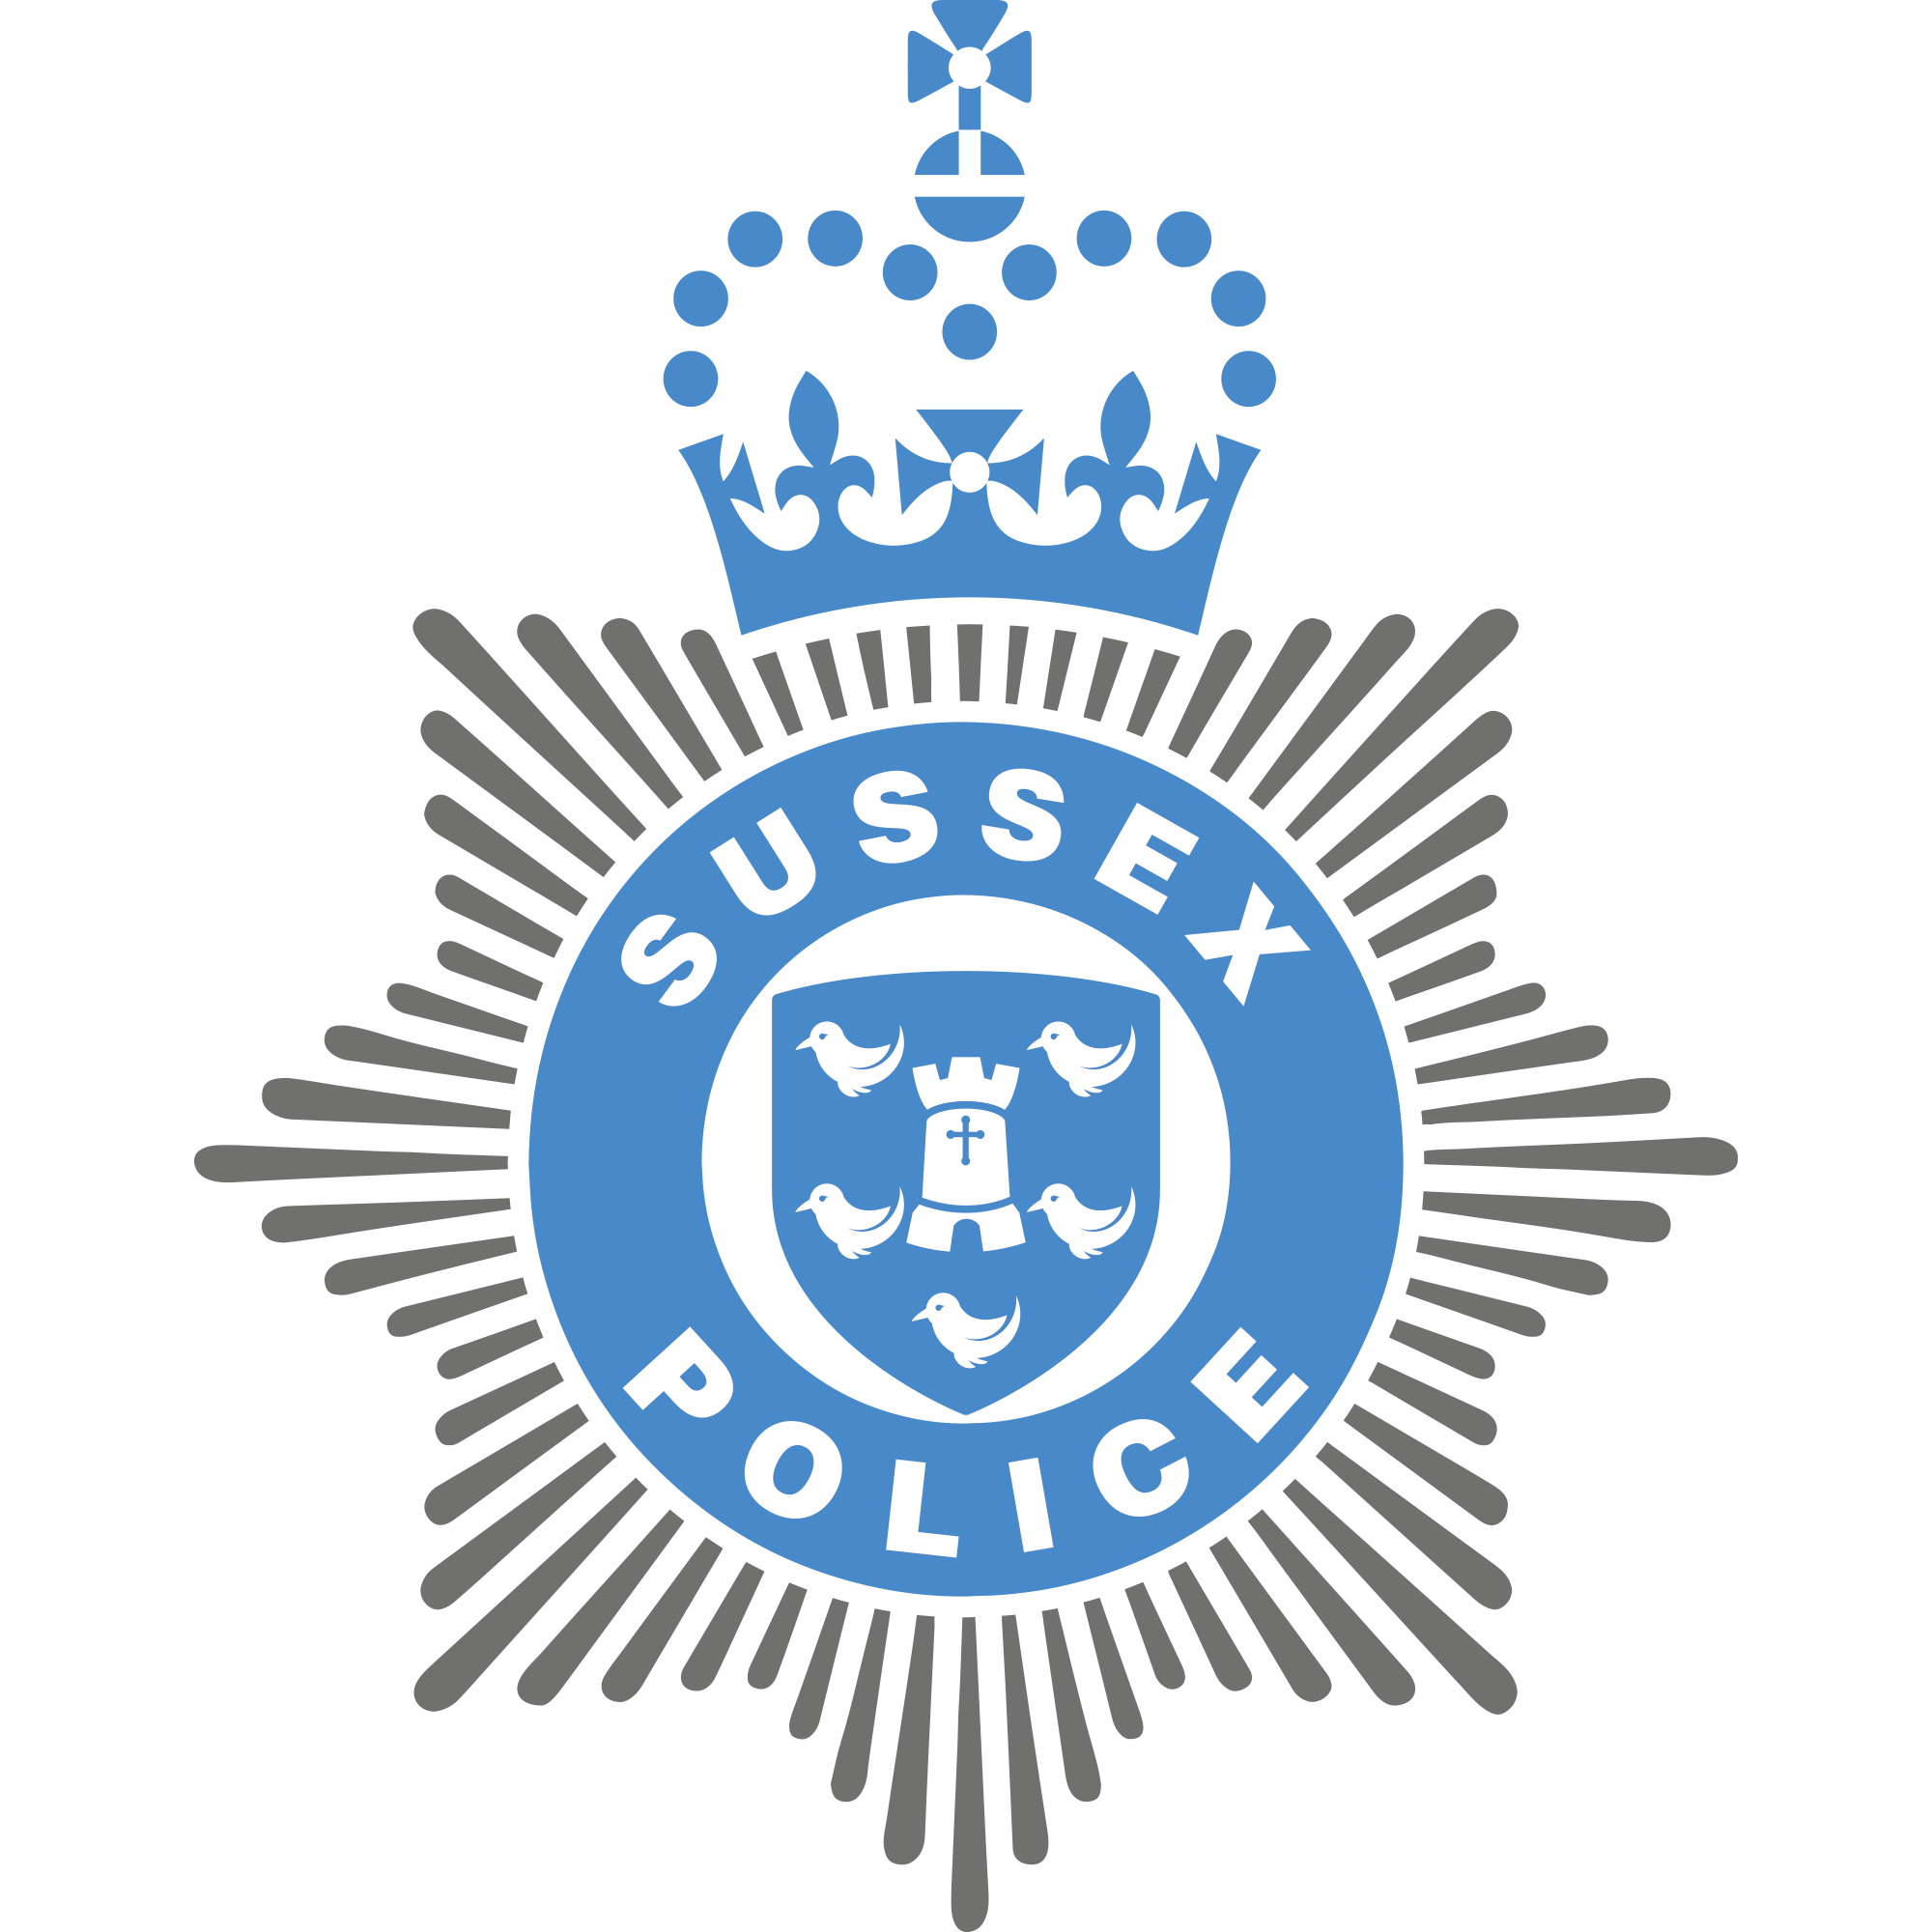 Ridgewood Logo - Police To Target Ridgewood With Anti Social Behaviour Patrols